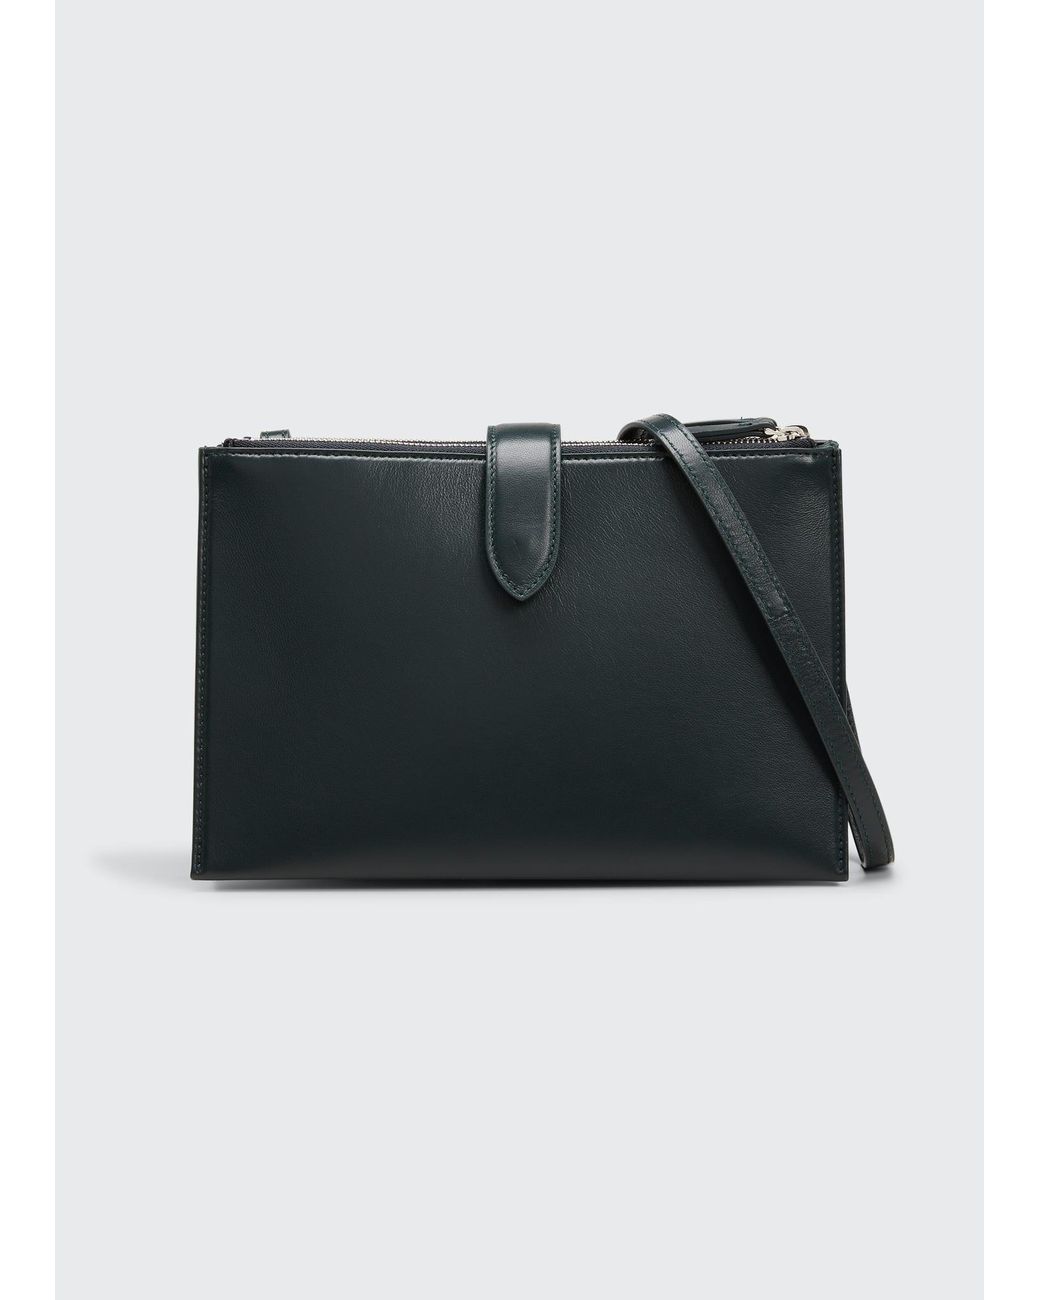 black handbag with zip